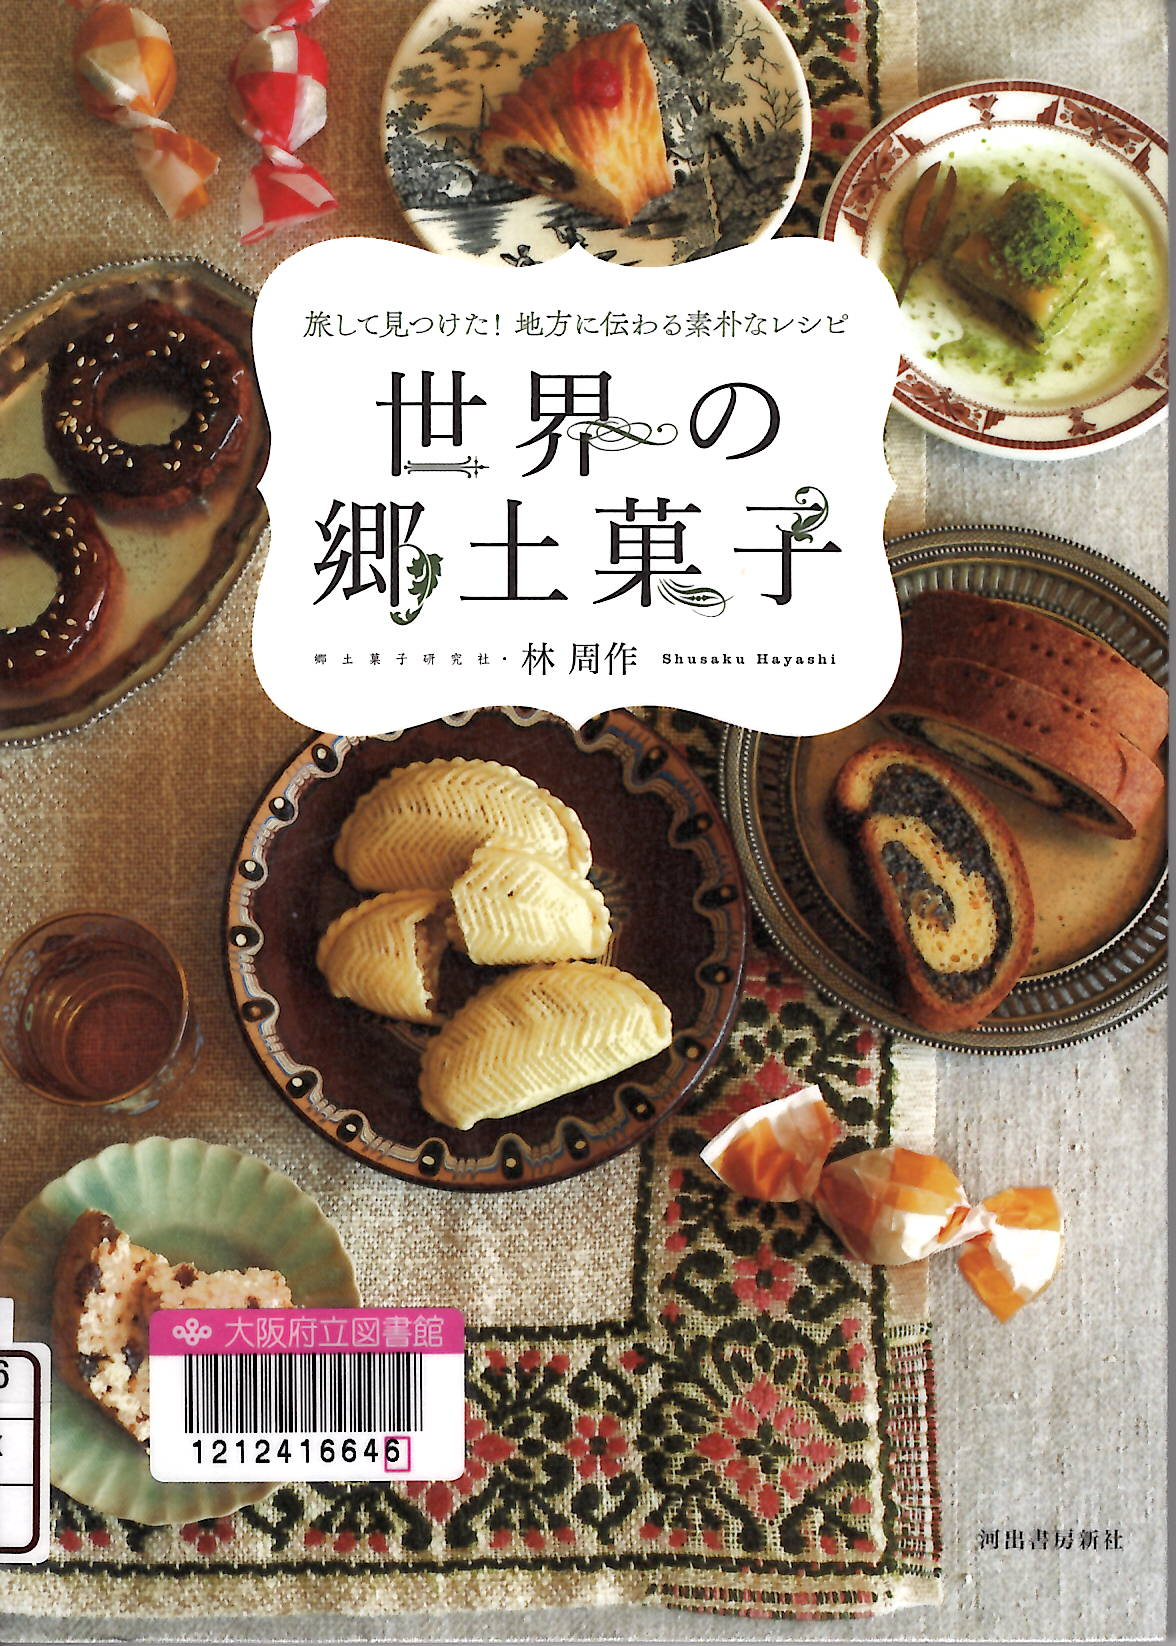 『世界の郷土菓子：旅して見つけた!地方に伝わる素朴なレシピ』の表紙